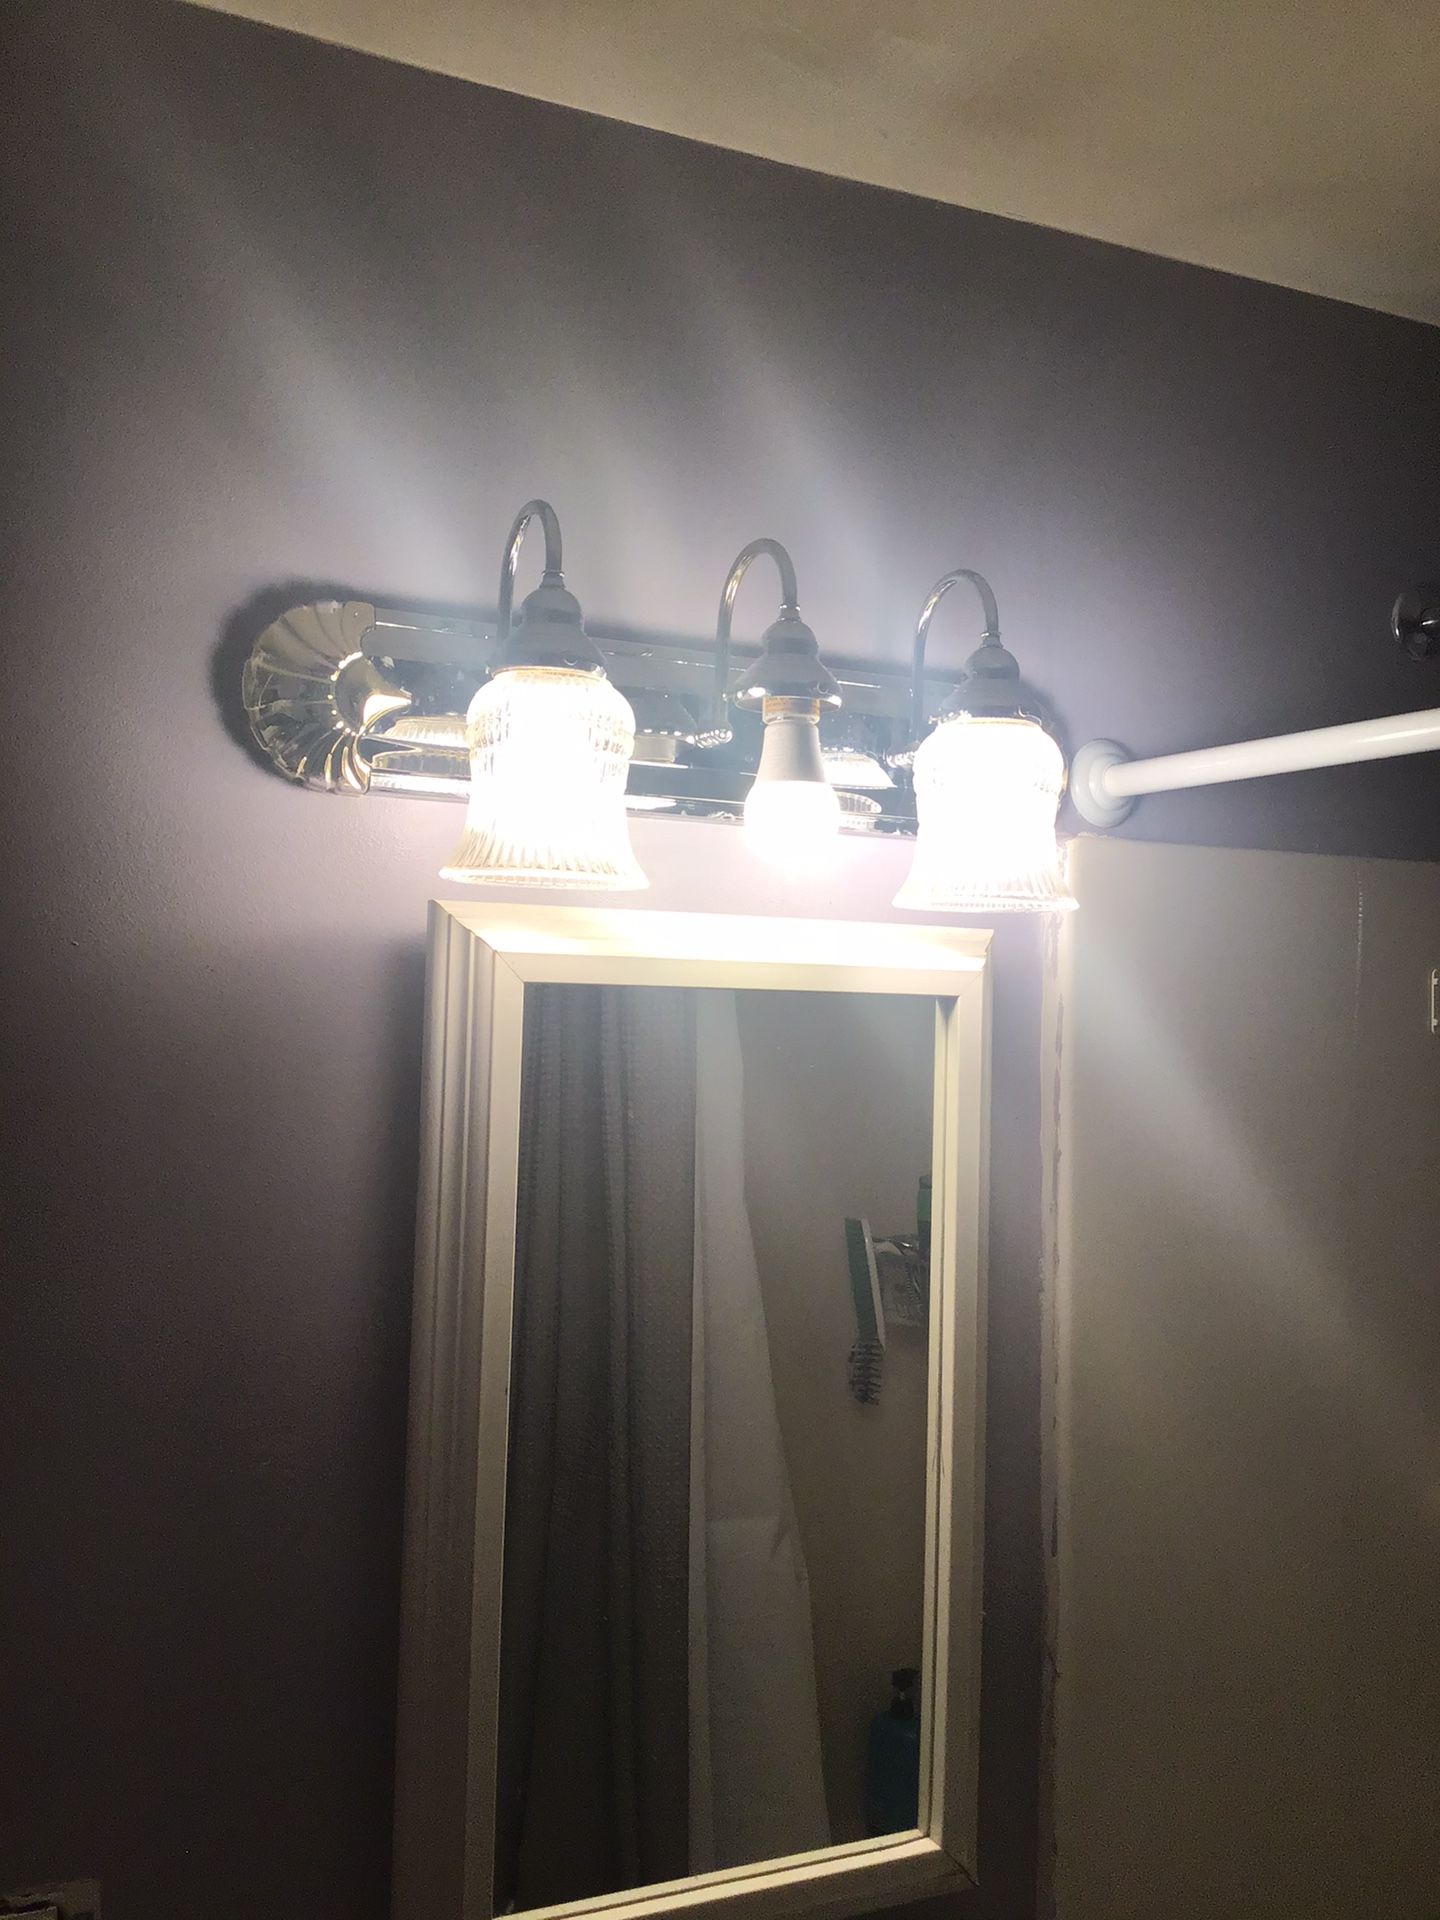 Bathroom vanity light